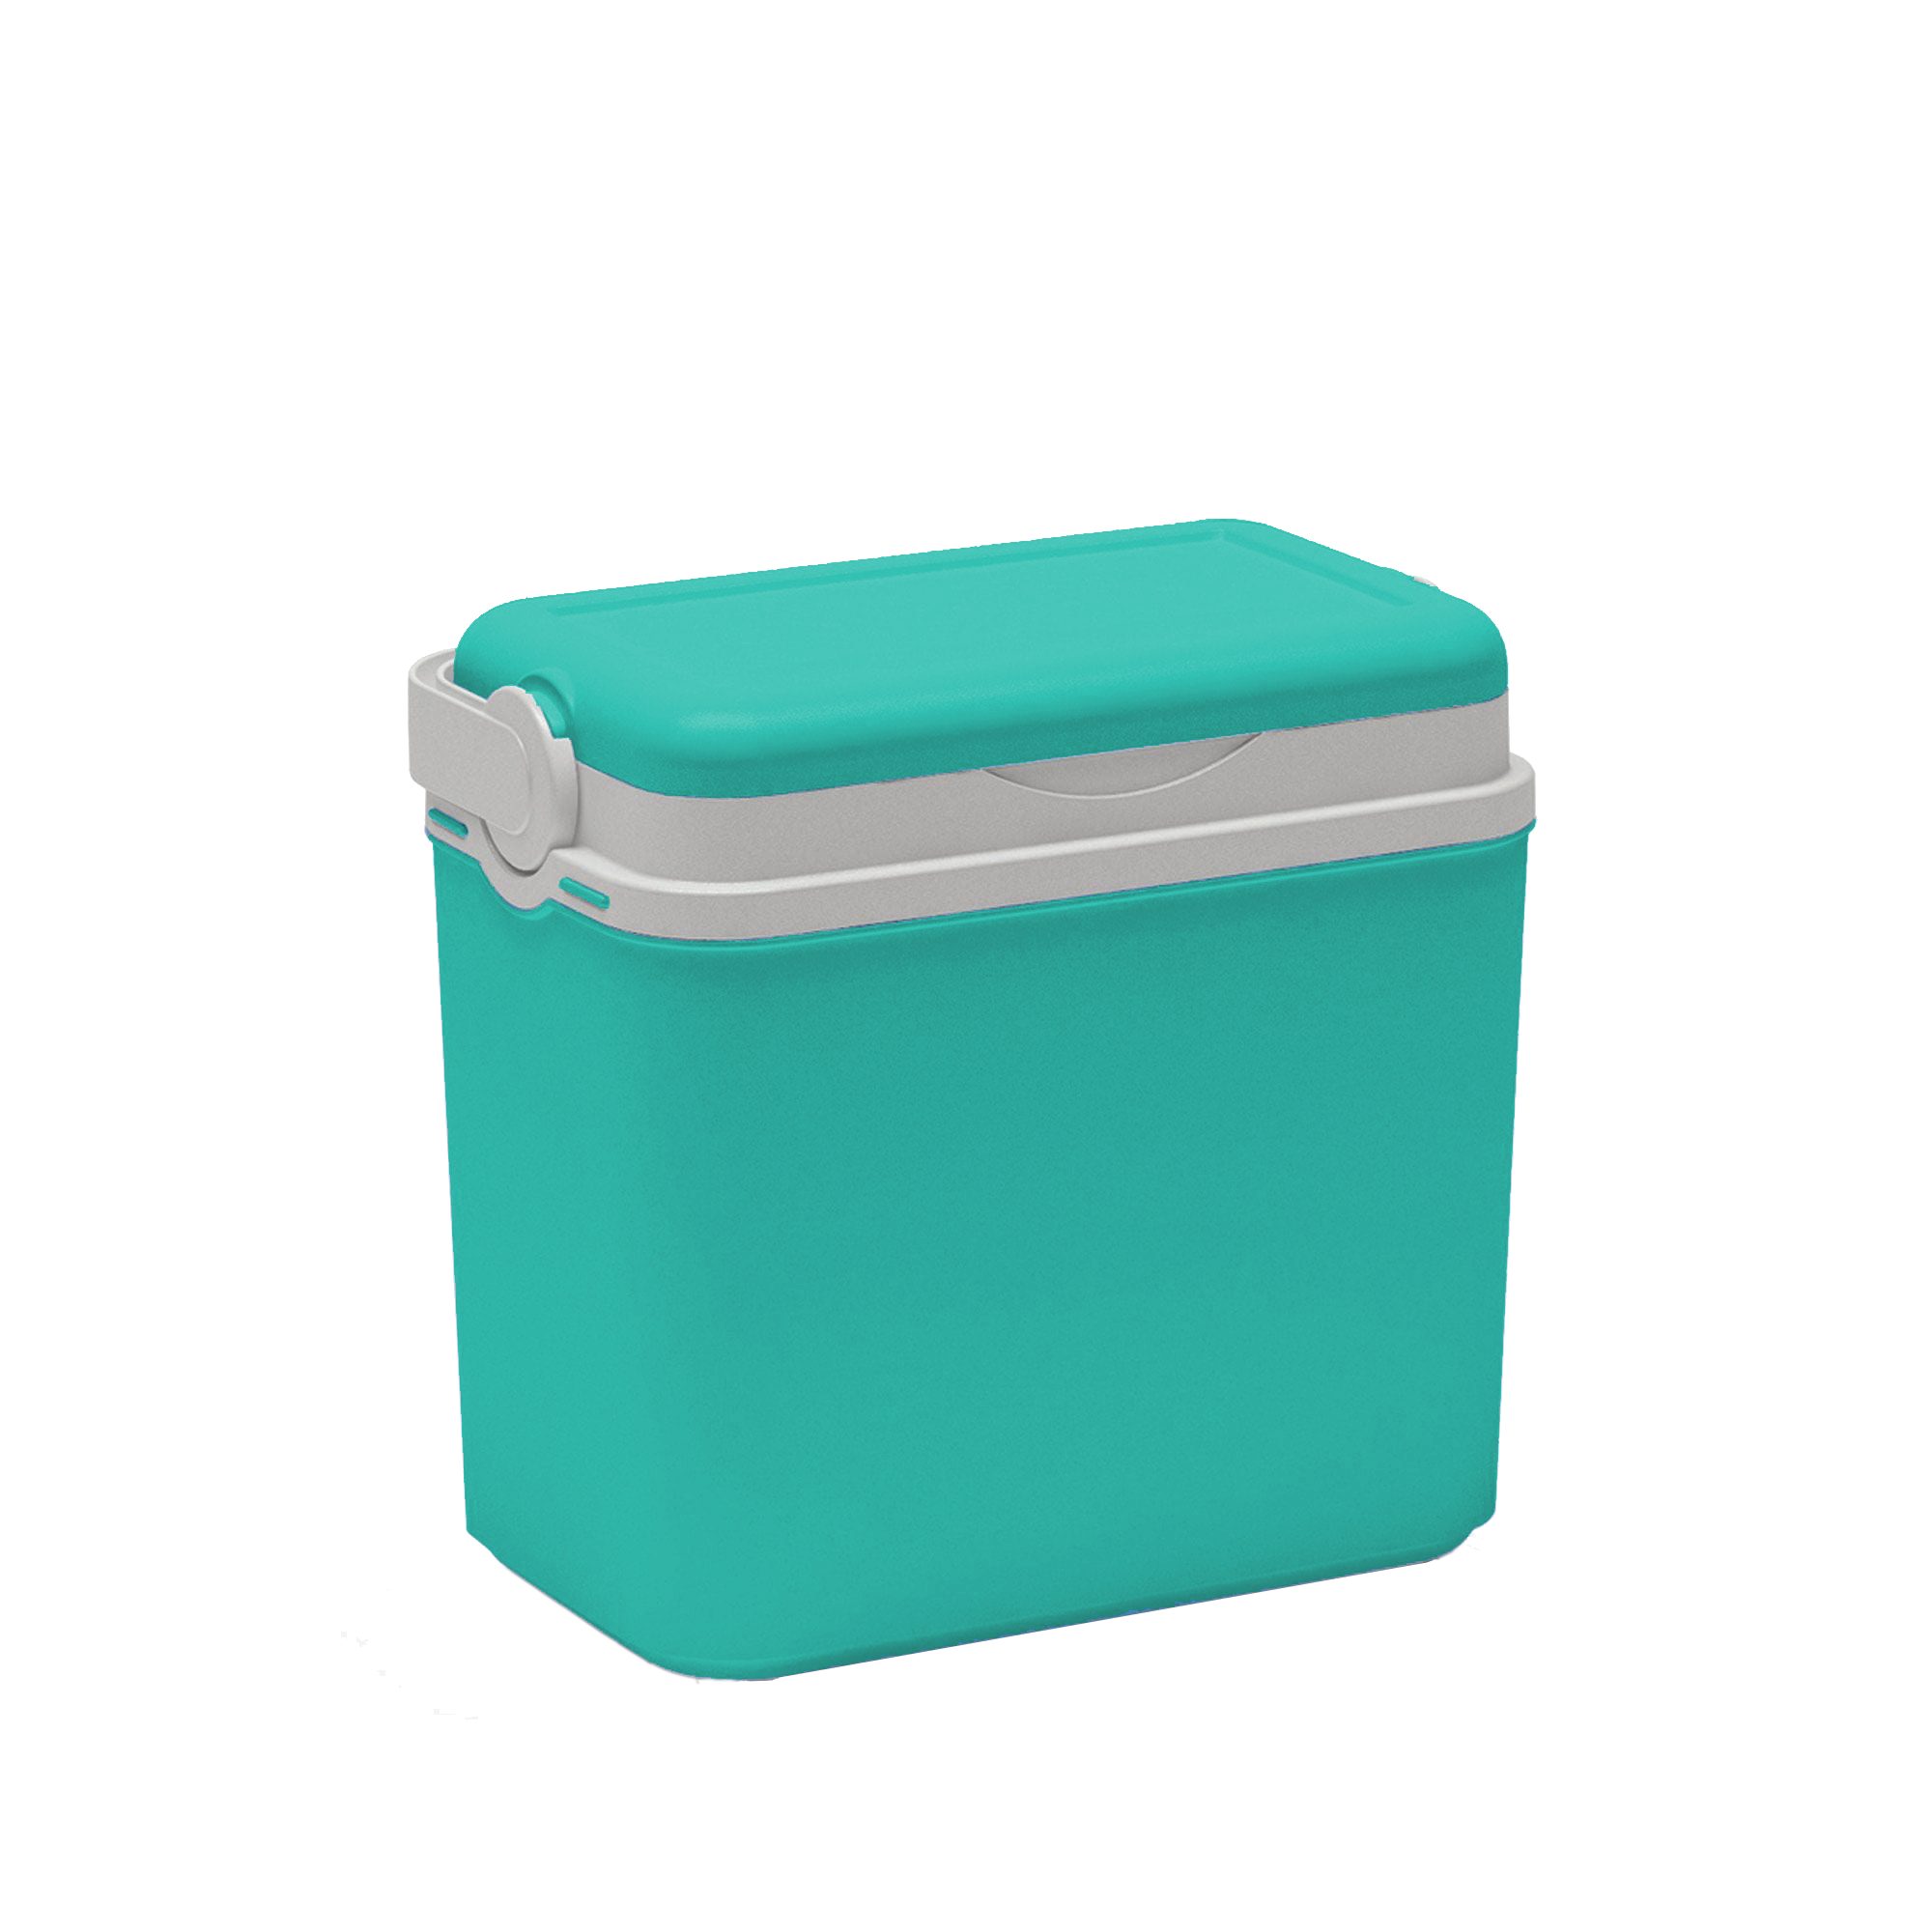 Kreher Frischhaltedose verschiedenen Türkis in Liter wählbar) Kühlbox (Farbe 10 Farben